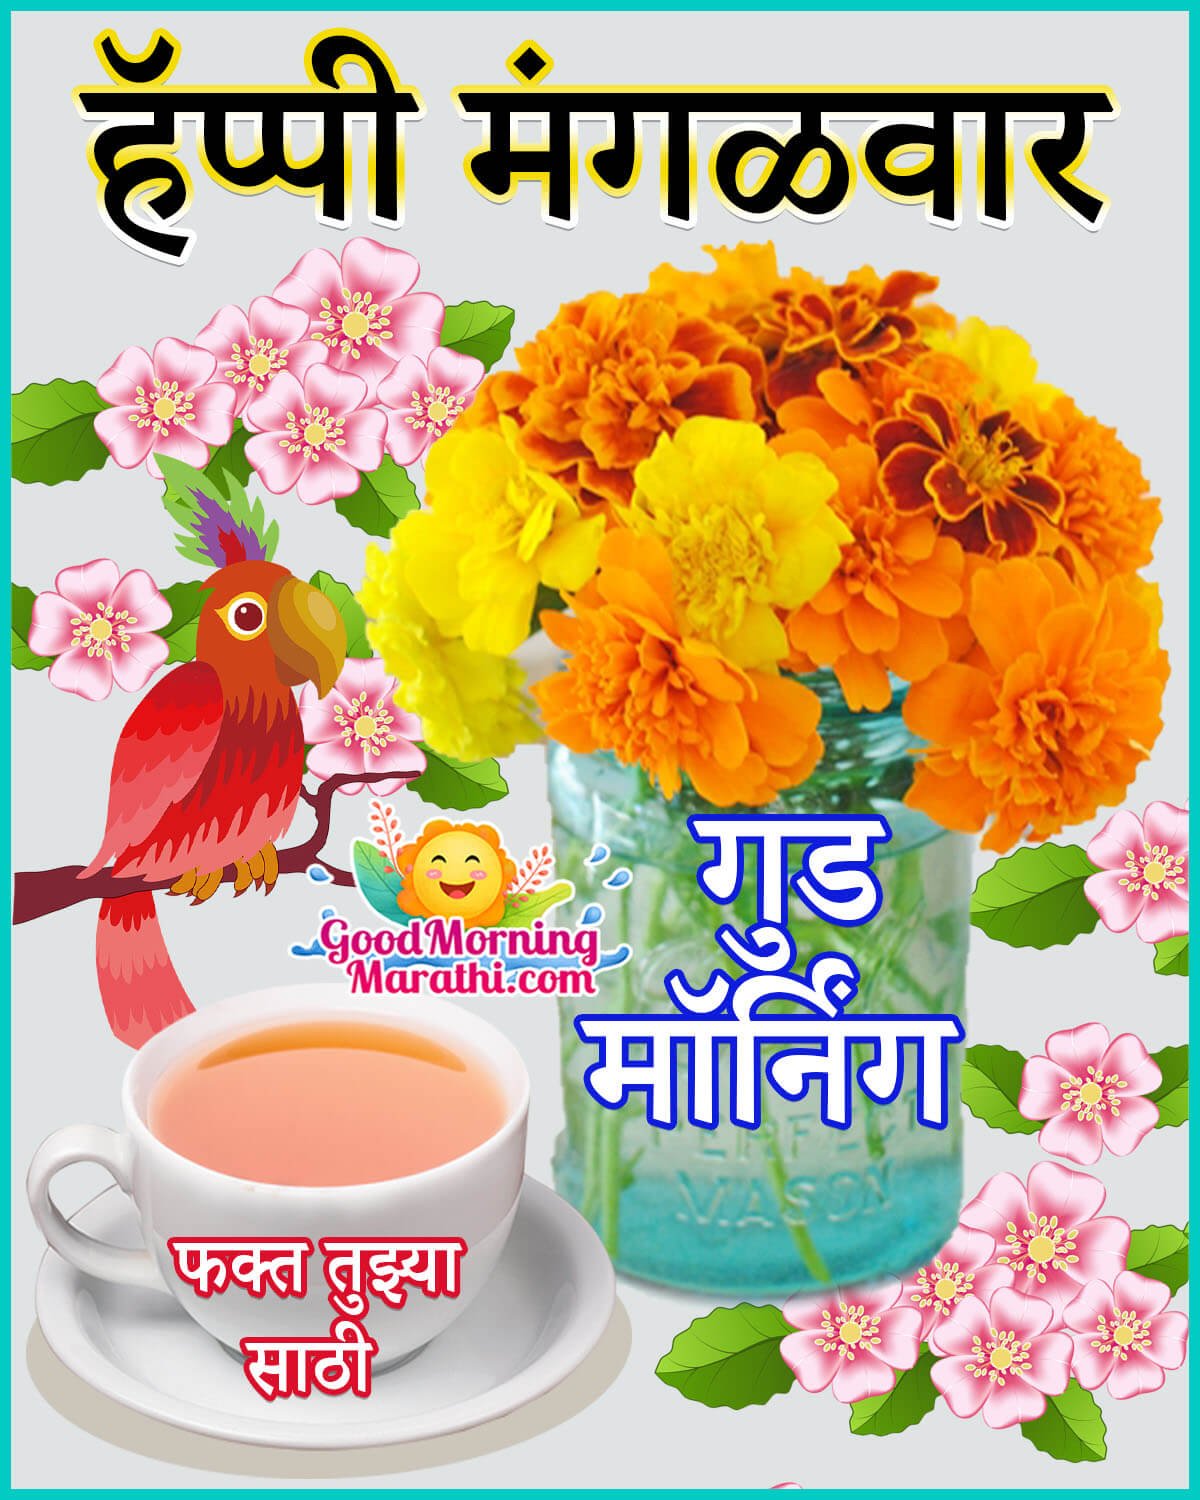 Good Morning Happy Tuesday Image In Marathi